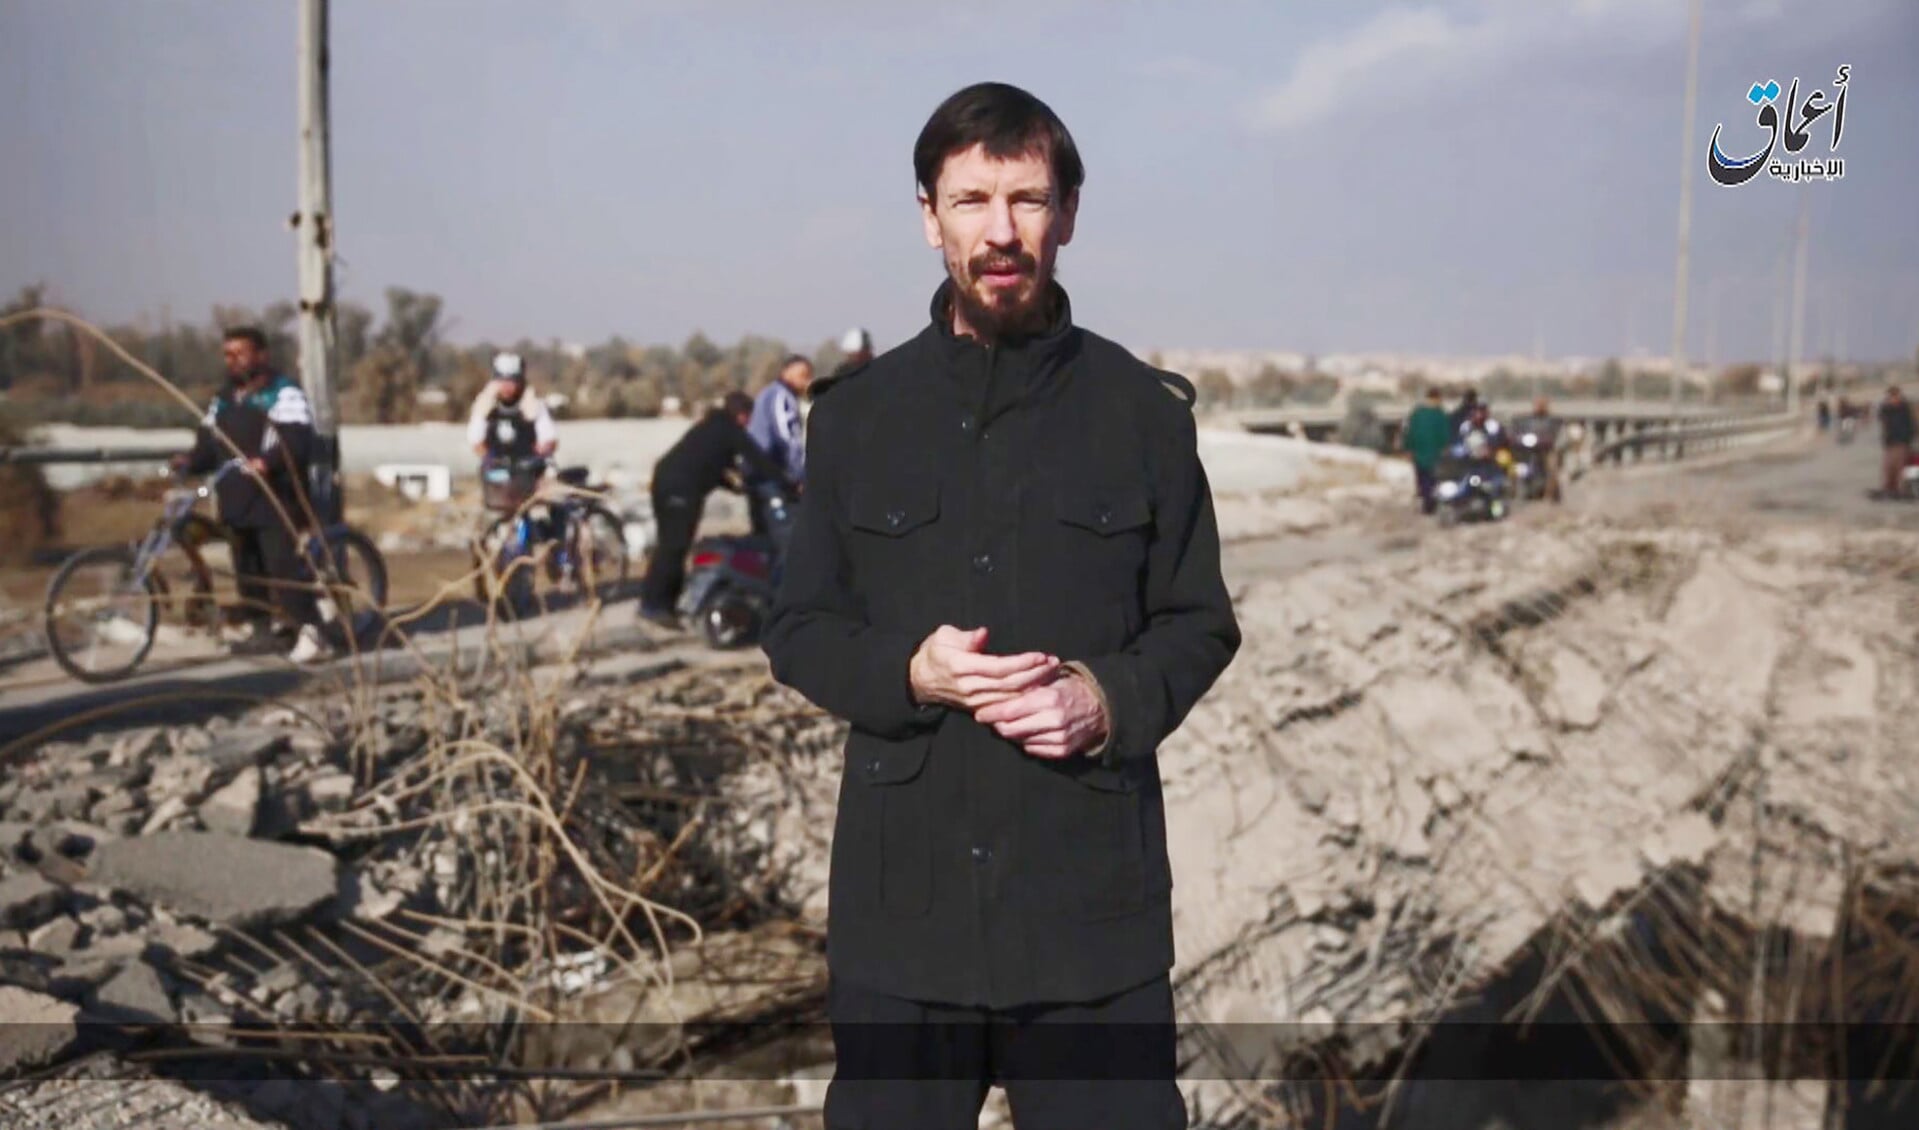 Een beeld van een propagandavideo die de Britse ISIS-gijzelaar John Cantlie in 2016 maakte voor ISIS. De radicaal-islamitische terreurbeweging gebruikte Cantlie als journalist. In die hoedanigheid maakte hij twee documentaireseries.